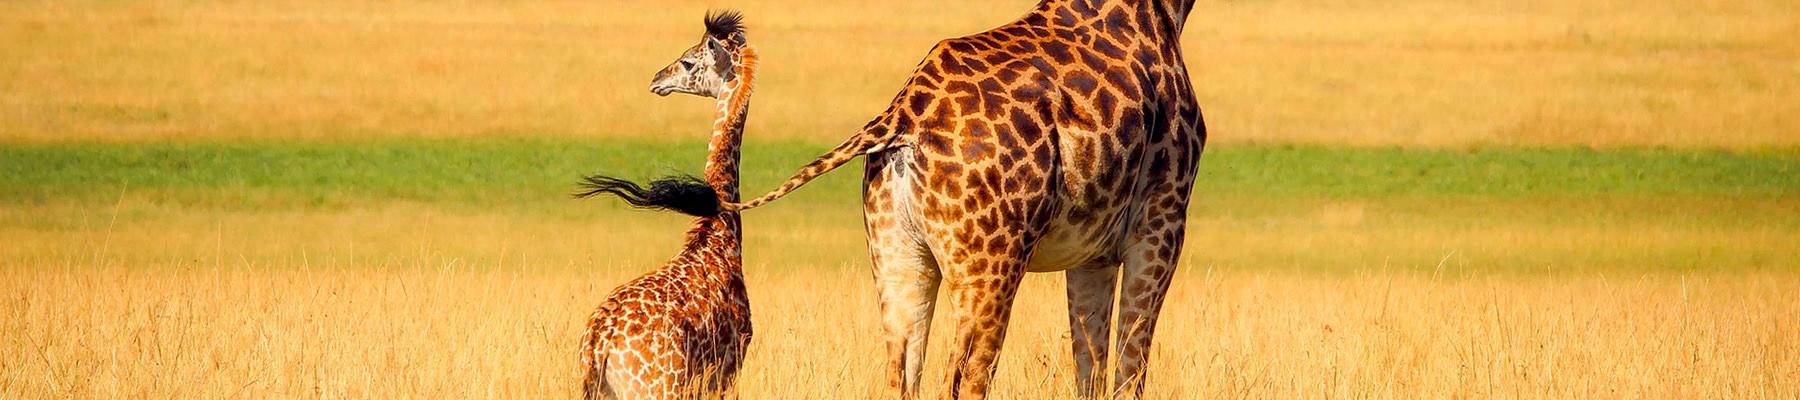 Giraffes © pixabay.com